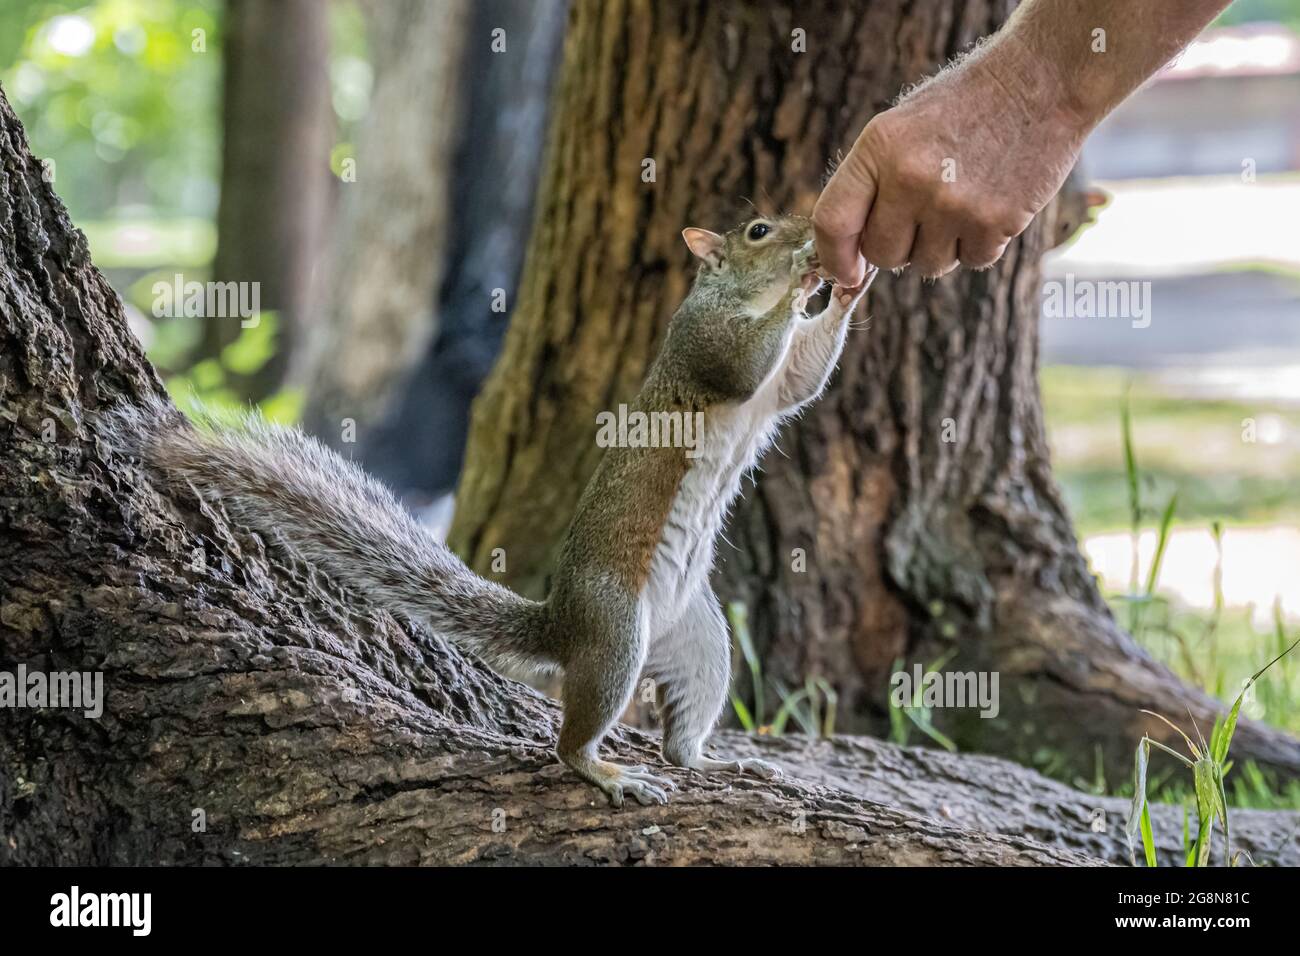 Homme nourrissant à la main l'écureuil gris de l'est (Sciurus carolinensis) au parc Meeks de Blairsville, en Géorgie. (ÉTATS-UNIS) Banque D'Images